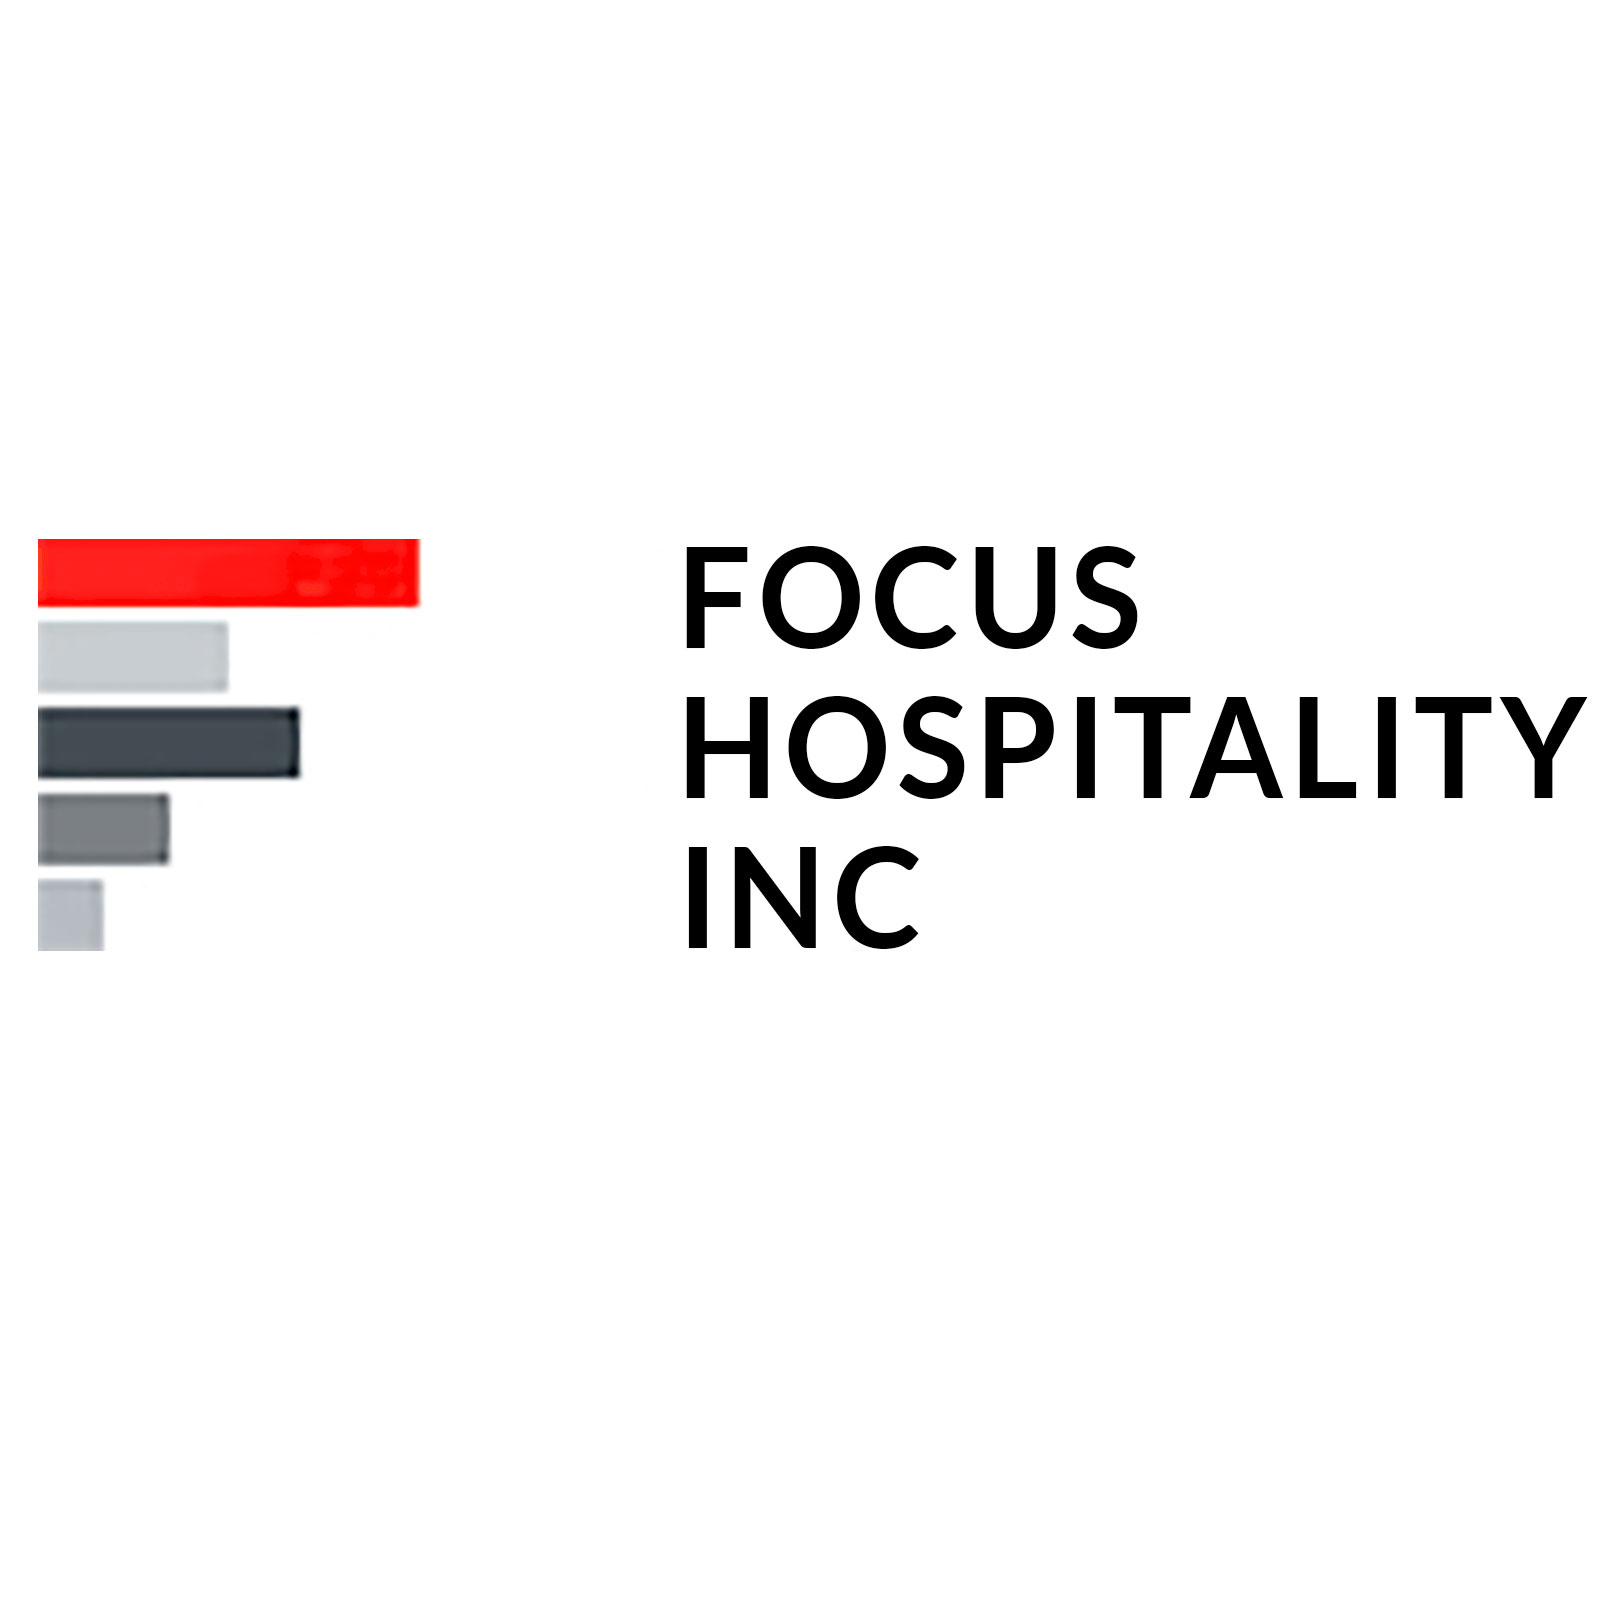 Focus Hospitality Inc